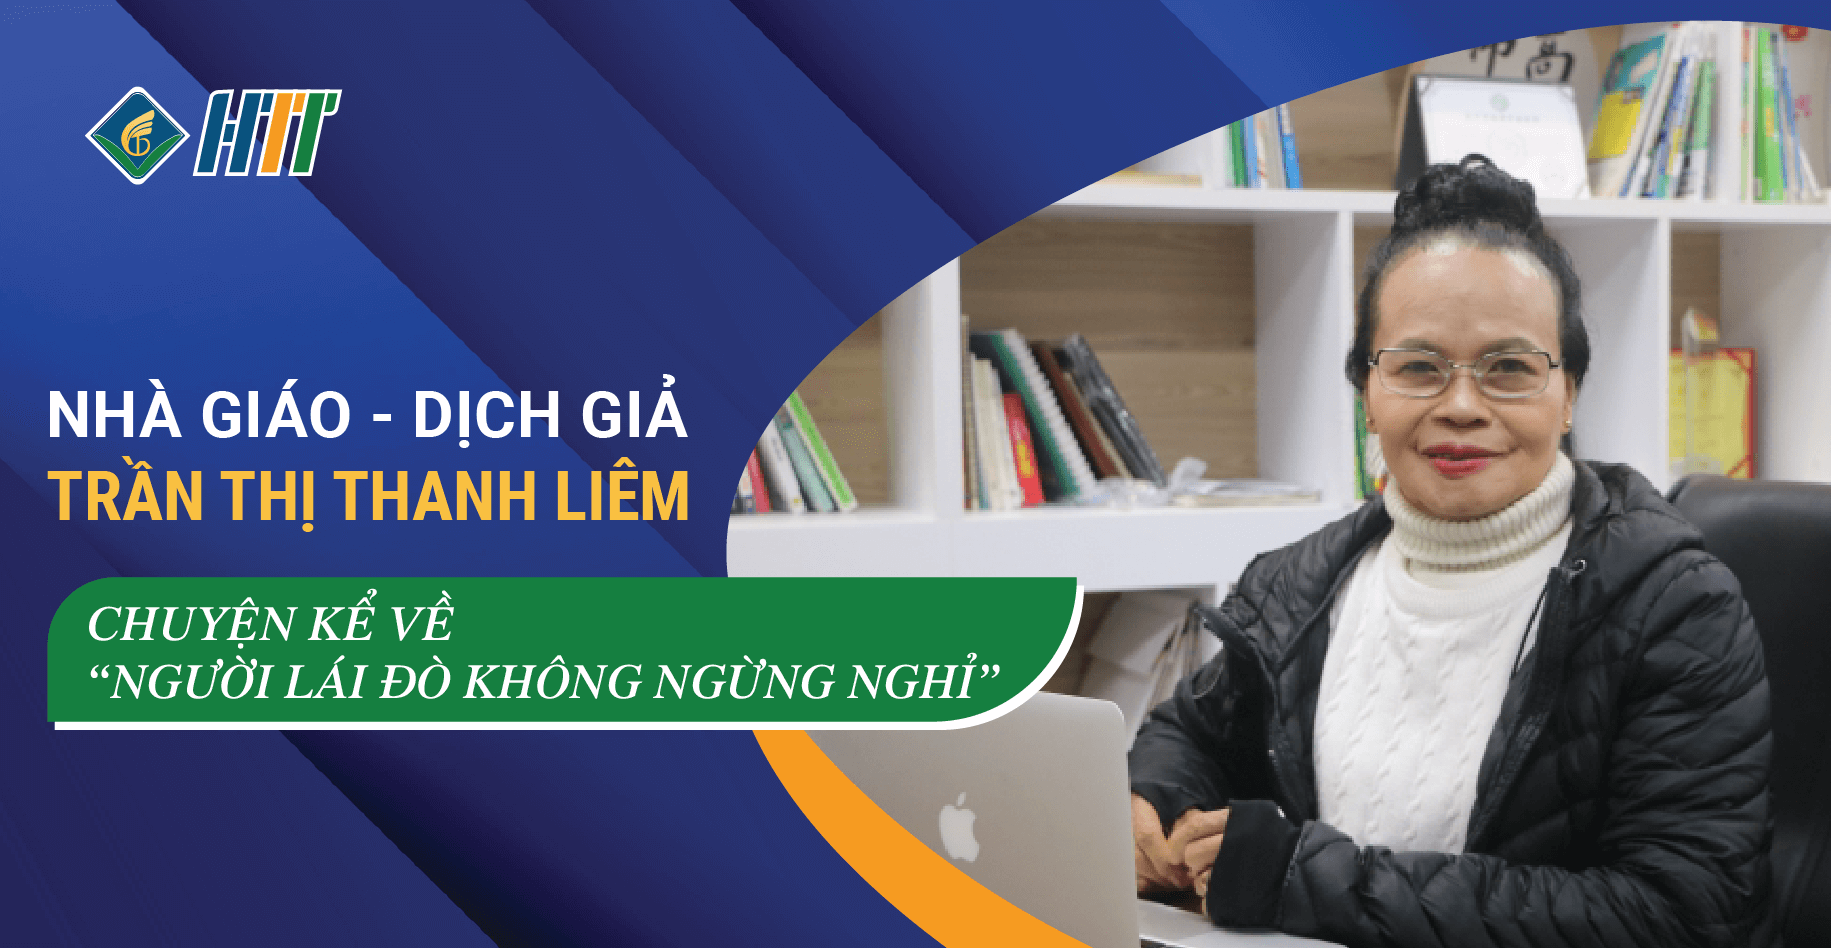 Nhà giáo, Dịch giả Trần Thị Thanh Liêm – Chuyện kể về “Người lái đò không ngừng nghỉ”